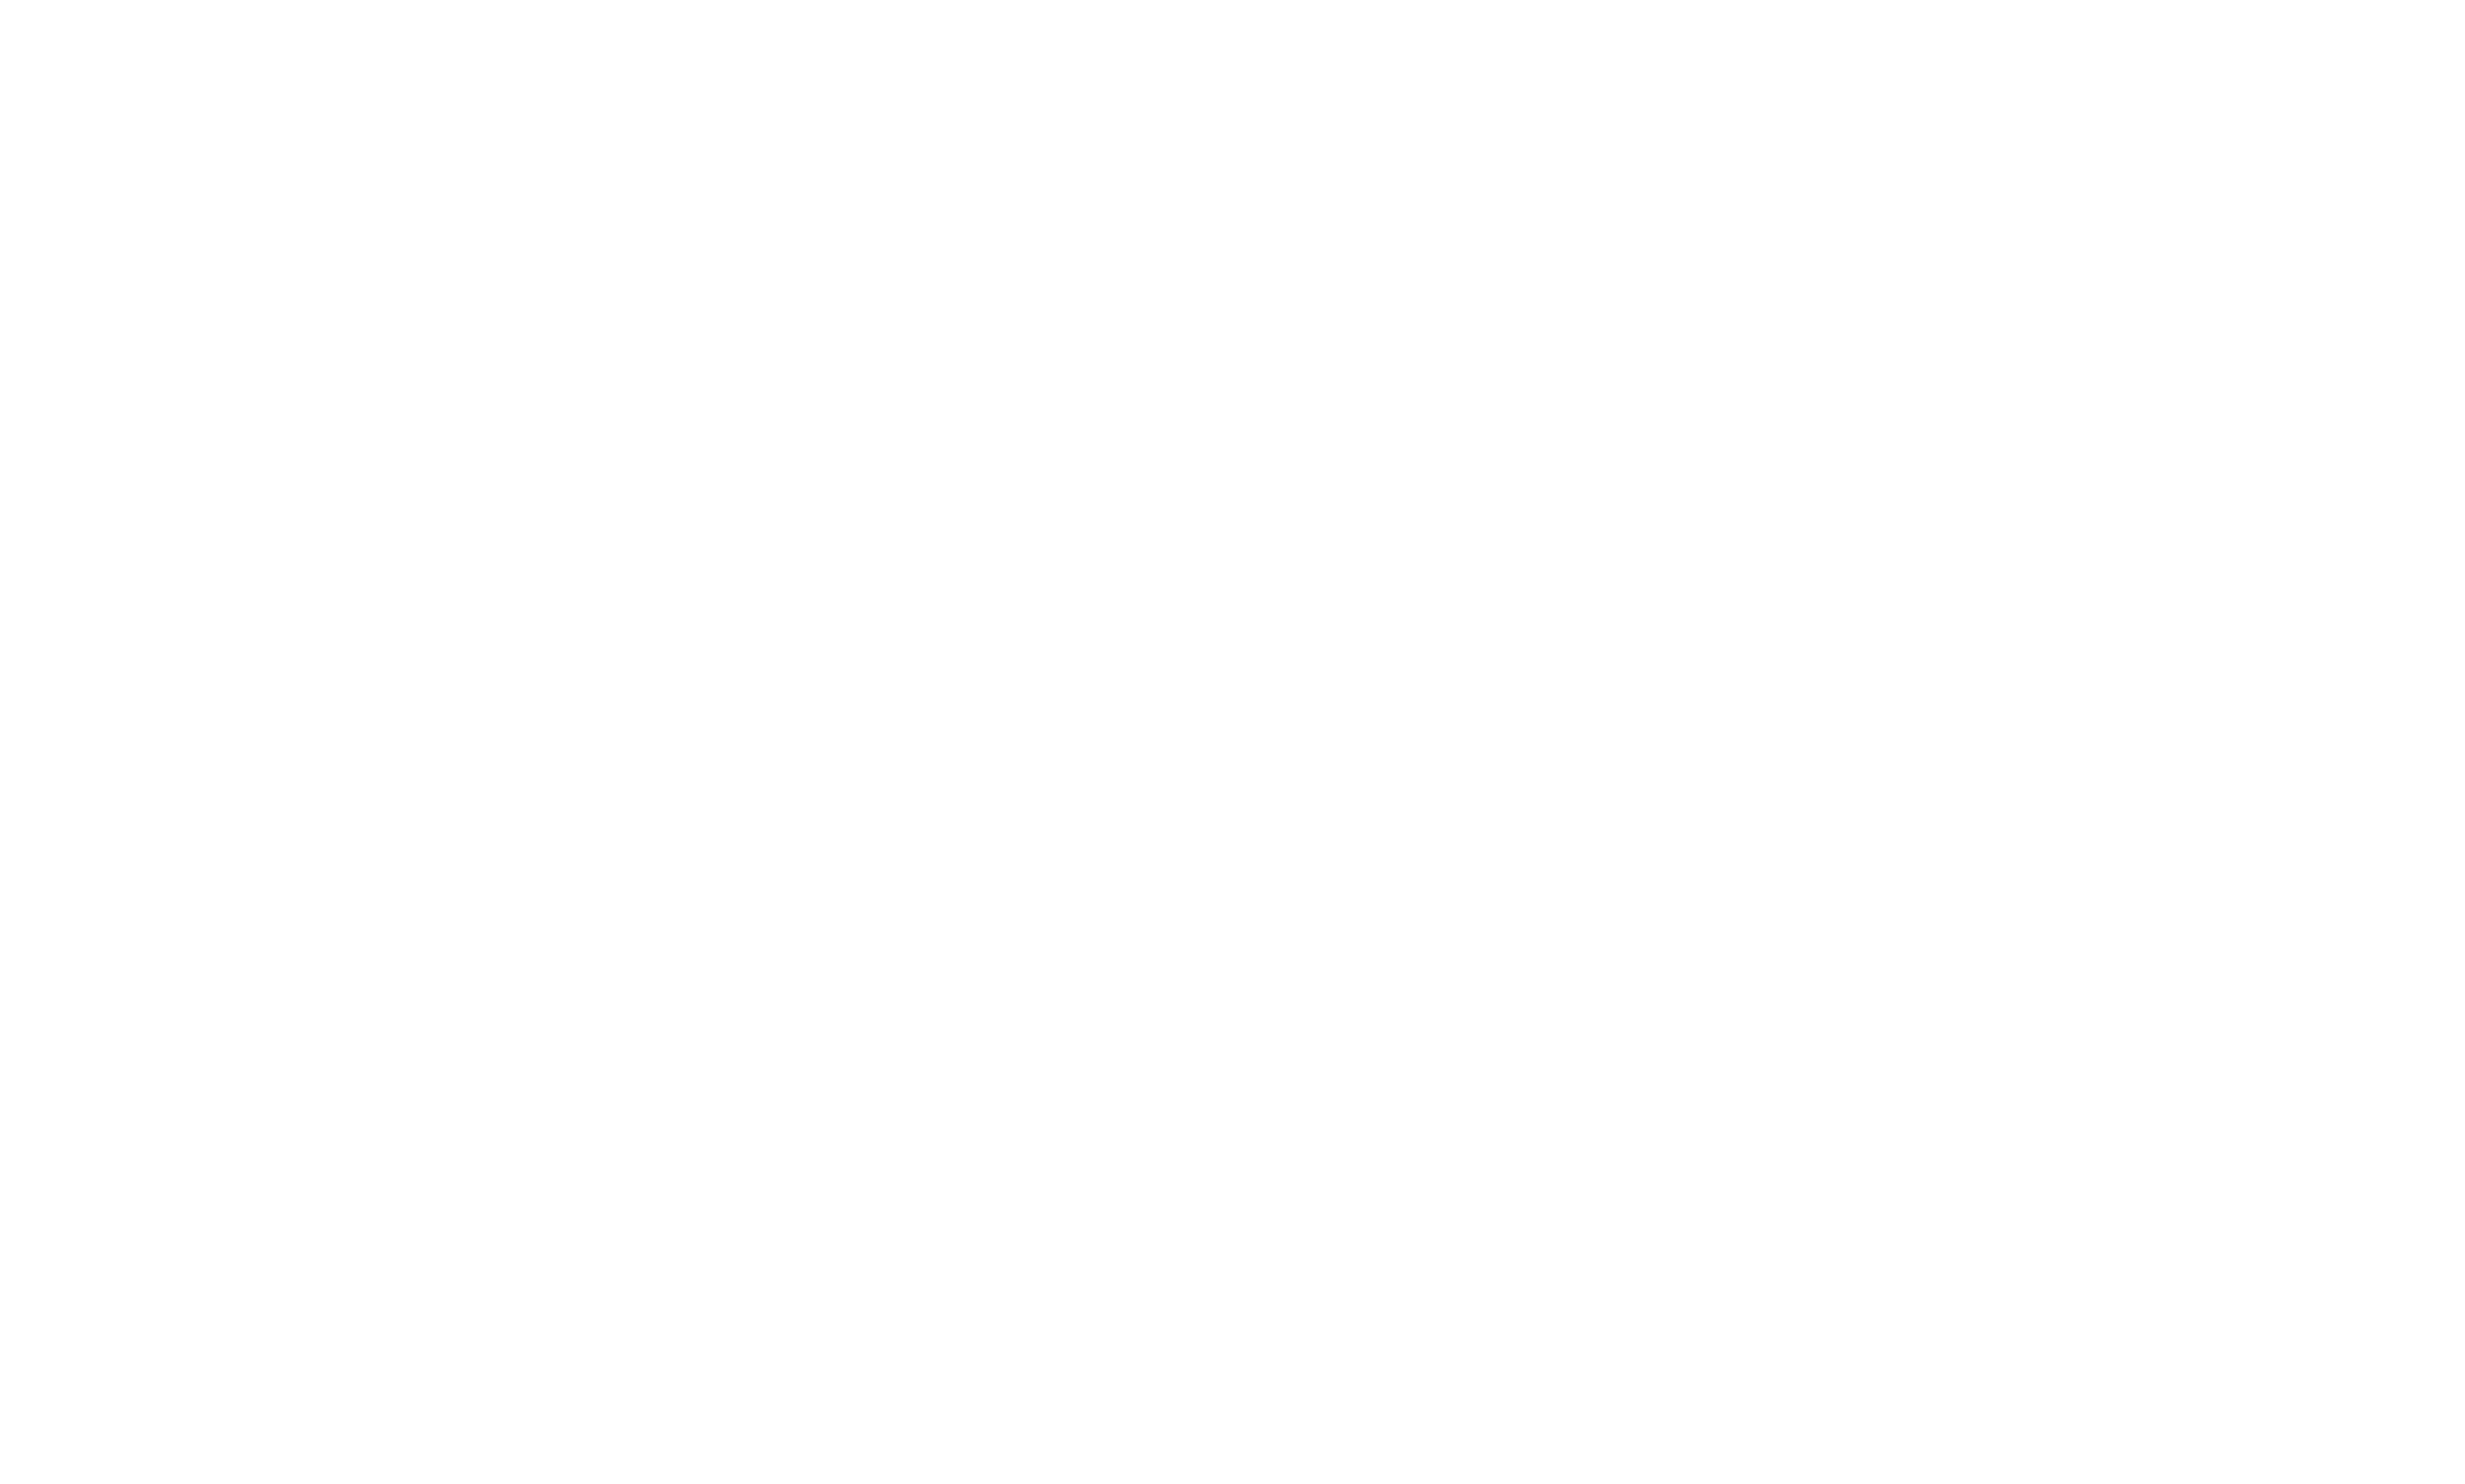 Teach Indy, Inc